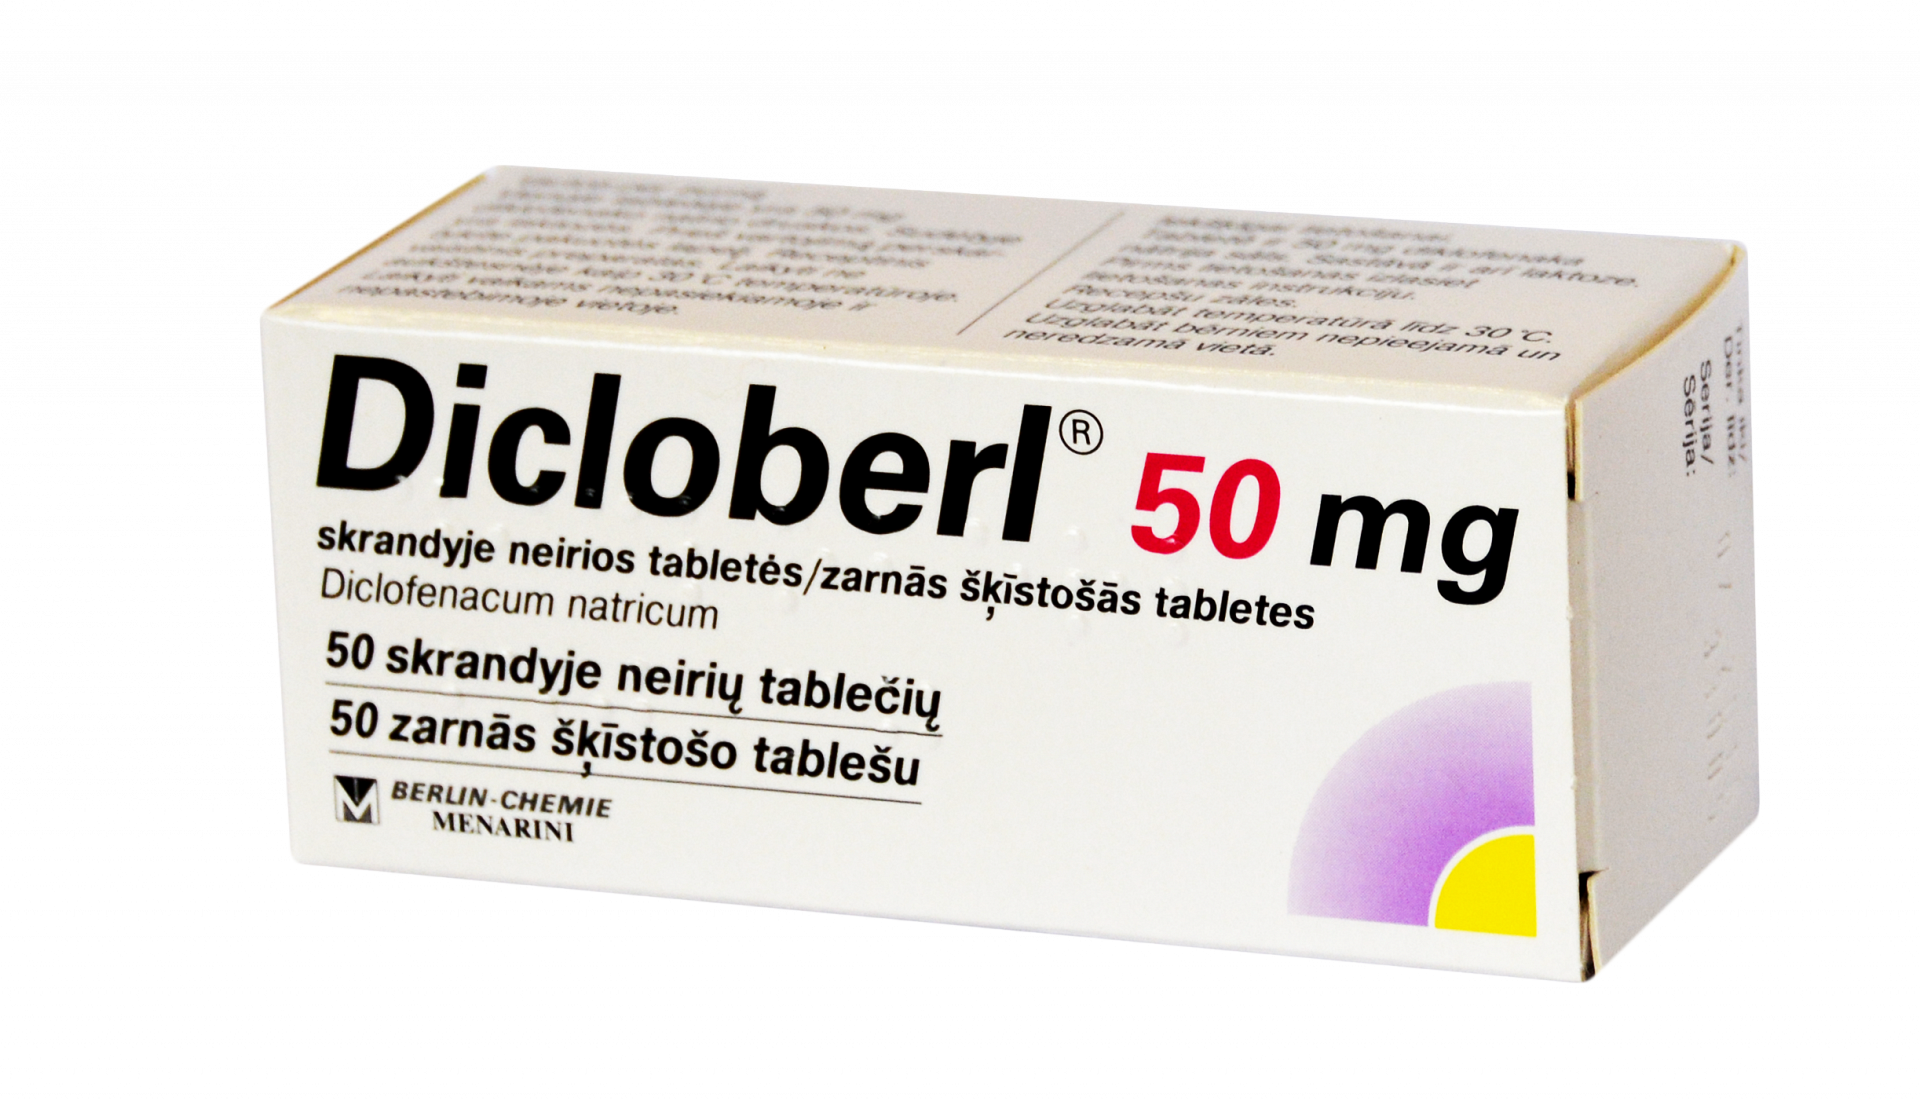 Dicloberl® - Liều dùng & Cách dùng thuốc an toàn 2